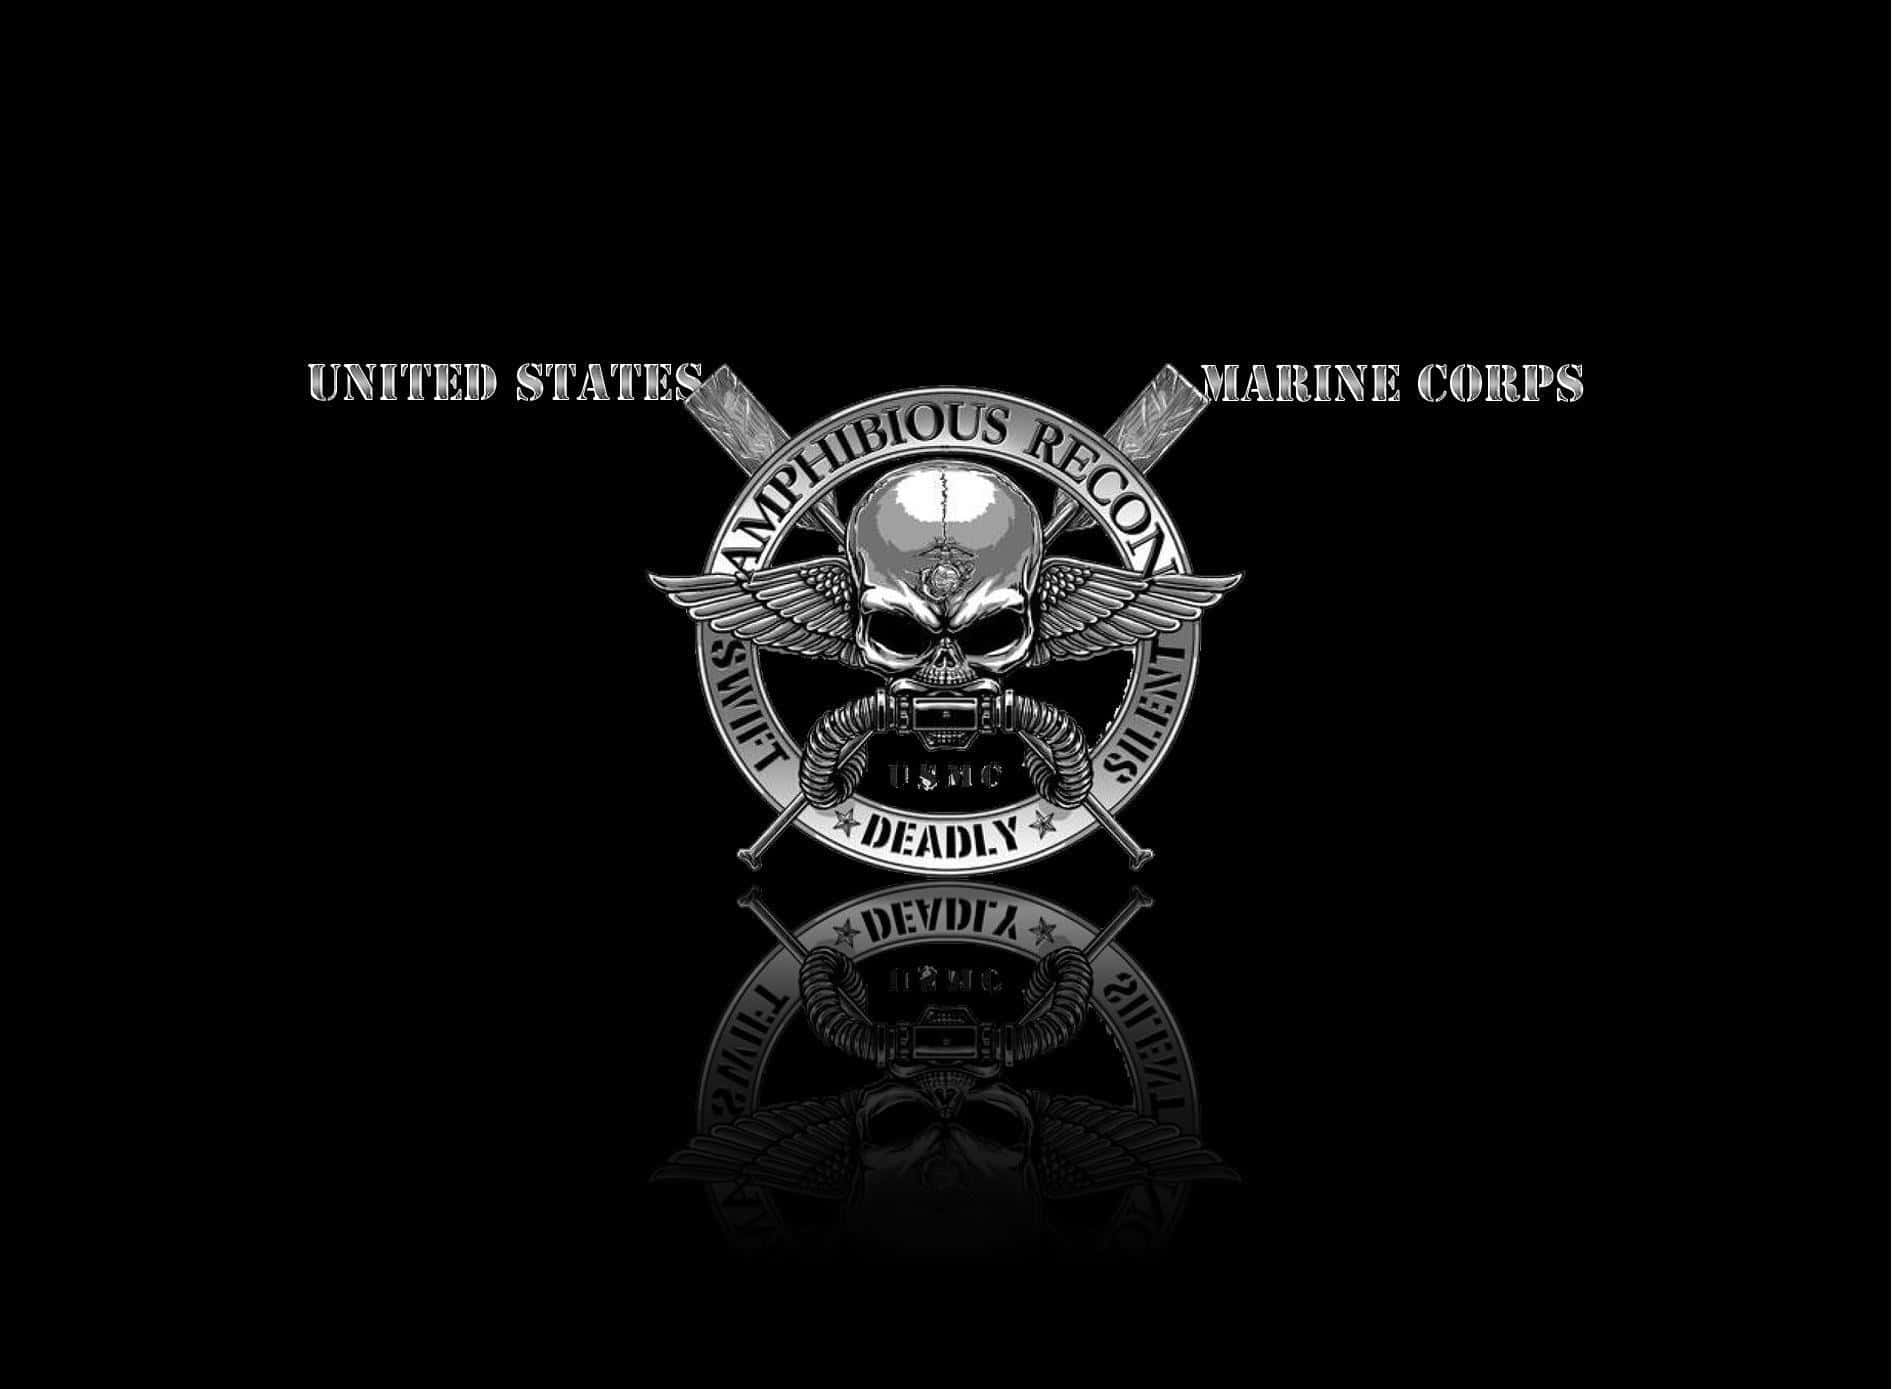 Semper Fi! Stolte medlemmer af De Forenede Staters Marinekorps. Wallpaper